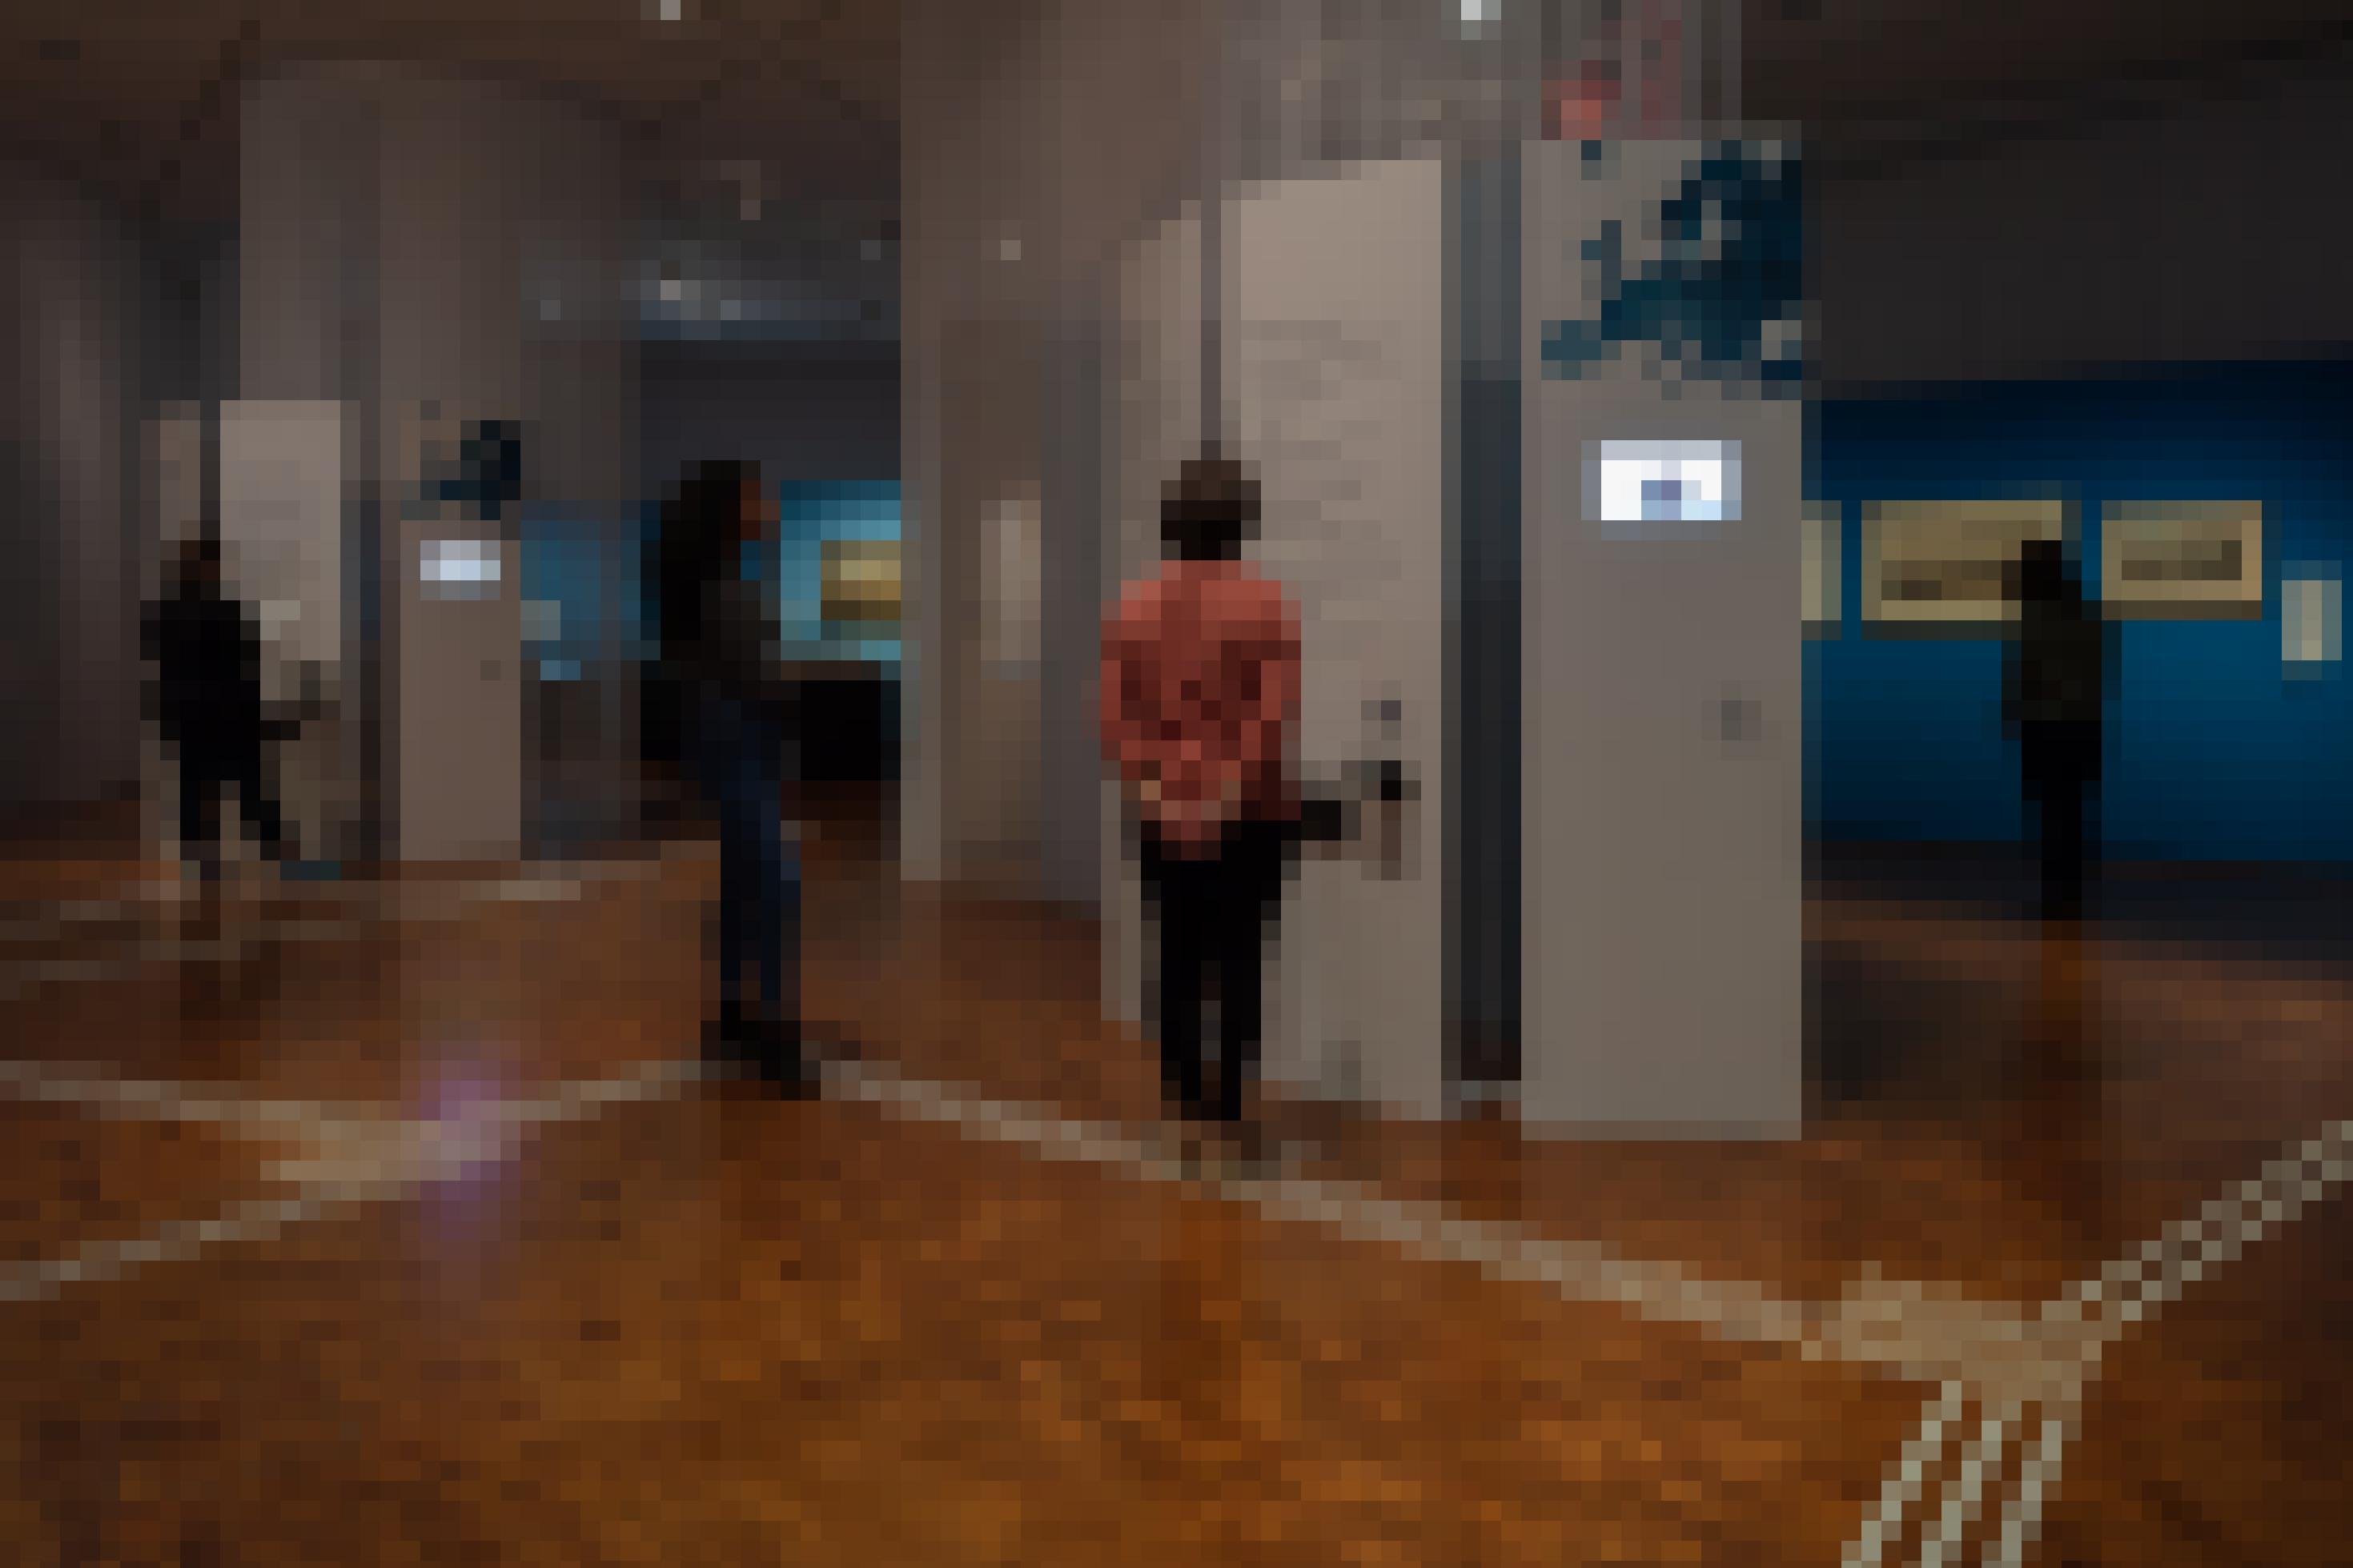 Das Foto zeigt einen Ausstellungsraum mit einer Stellwand. Darauf ist ein Monitor angebracht, über den Inhalte in Gebärdensprache laufen. Auf dem Boden ist ein Leitsystem für sehbehinderte Menschen angebracht.